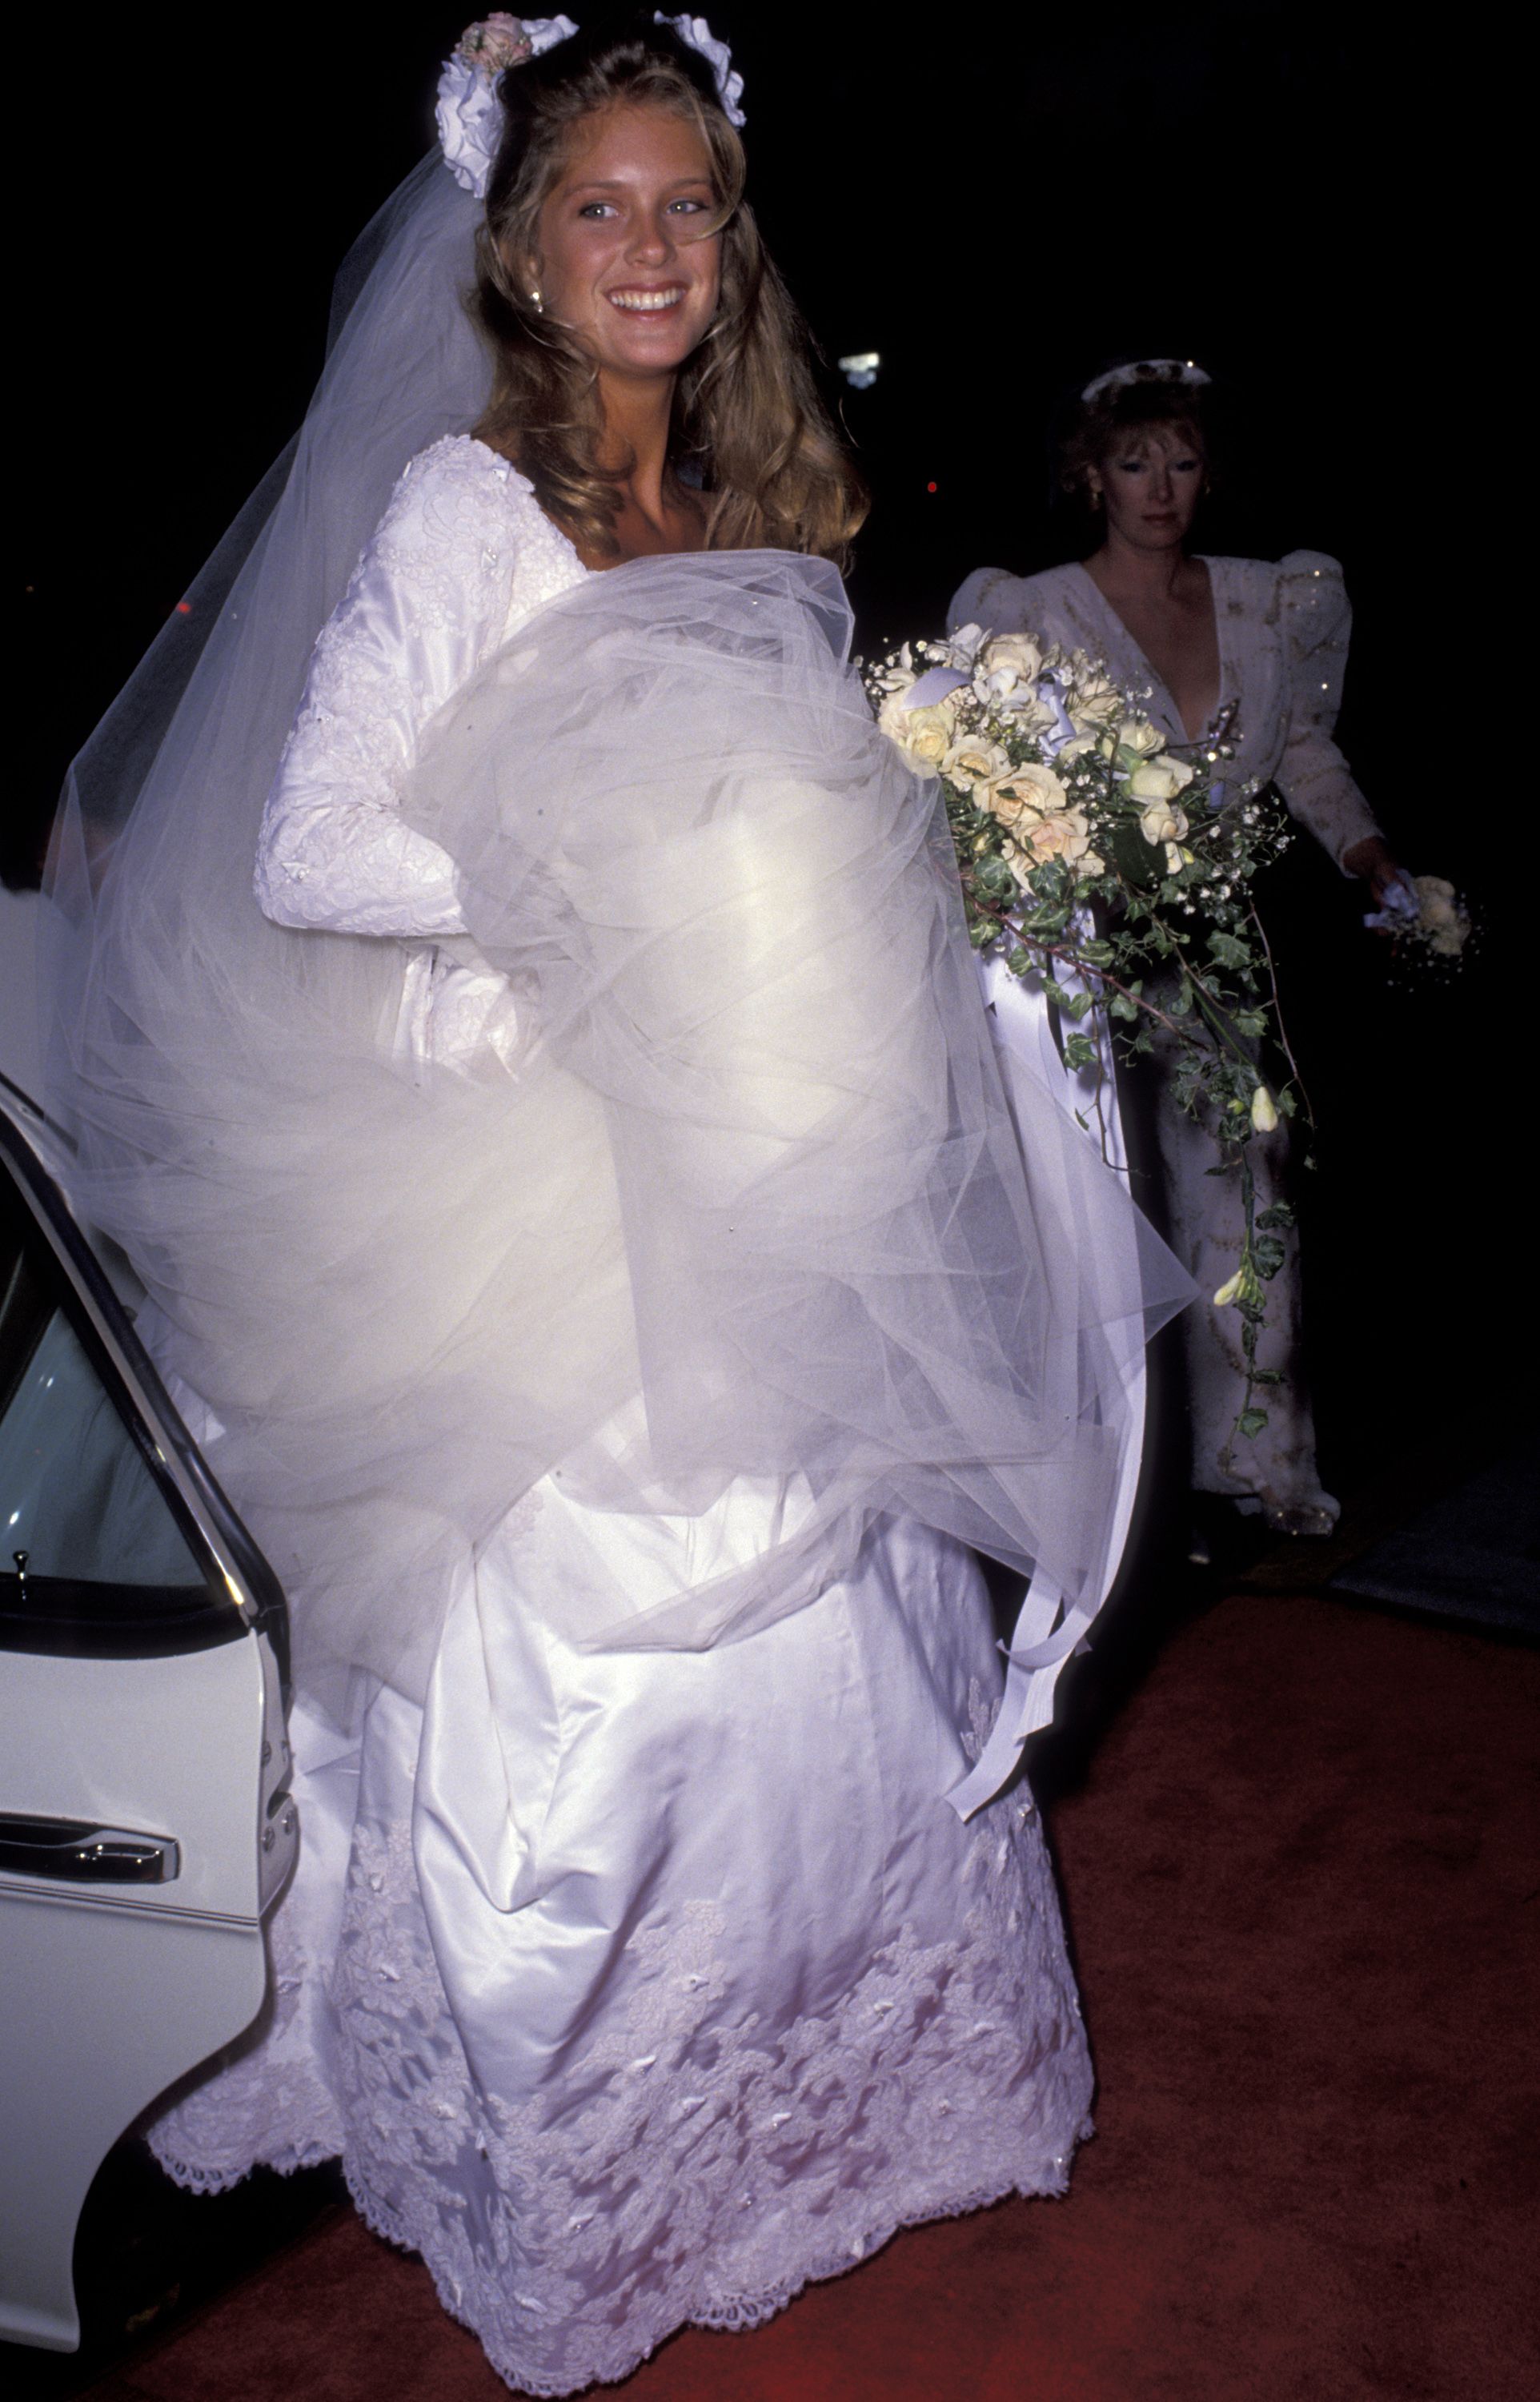 1990s bridesmaid dresses